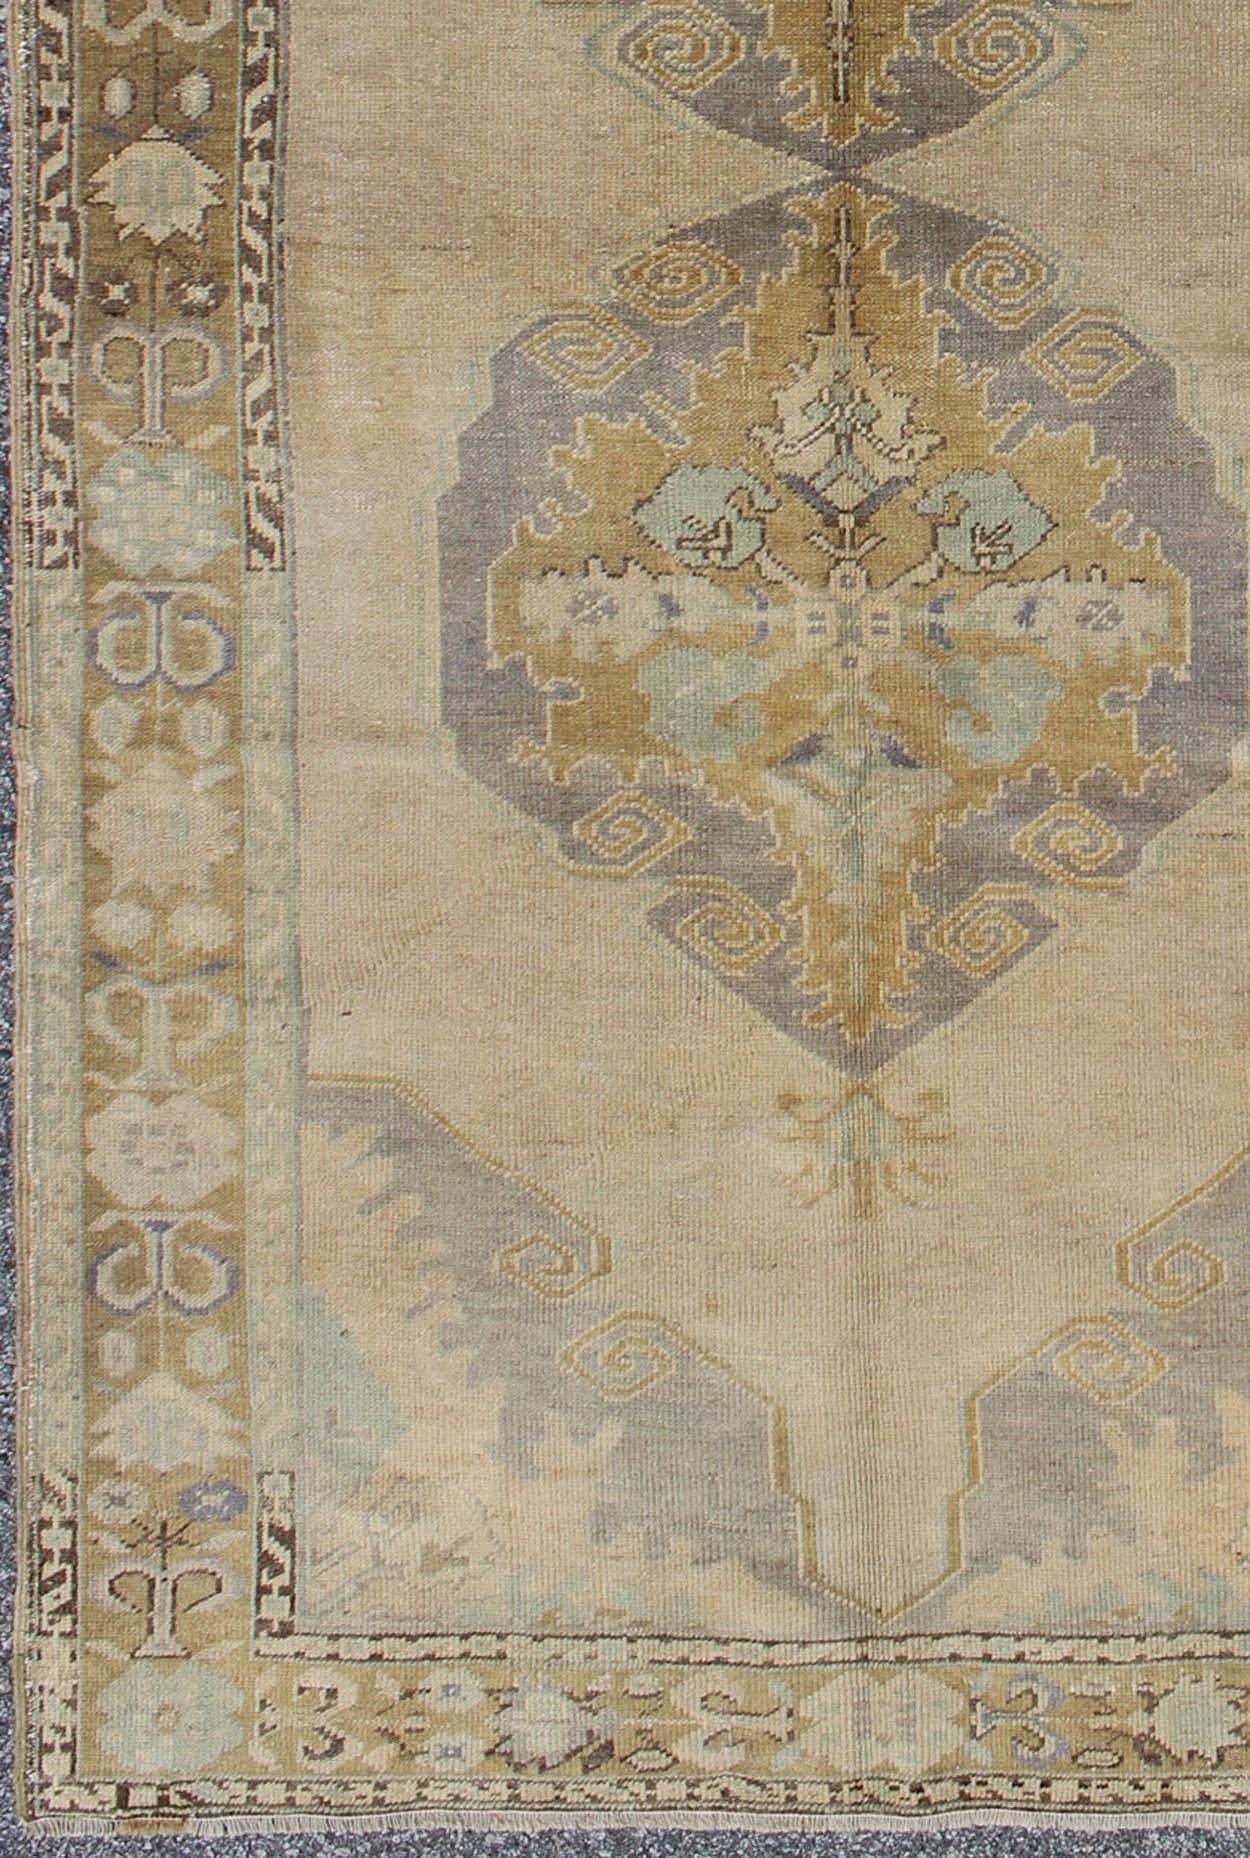 Vintage Gallery Oushak-Teppich mit floralen Medaillons in Erdtönen und Lavendel. Keivan Woven Arts / Teppich OSM-09, Herkunftsland / Art: Türkei / Oushak, um 1940

Dieser alte Oushak ist ein schönes Beispiel für die beeindruckende Handwerkskunst und